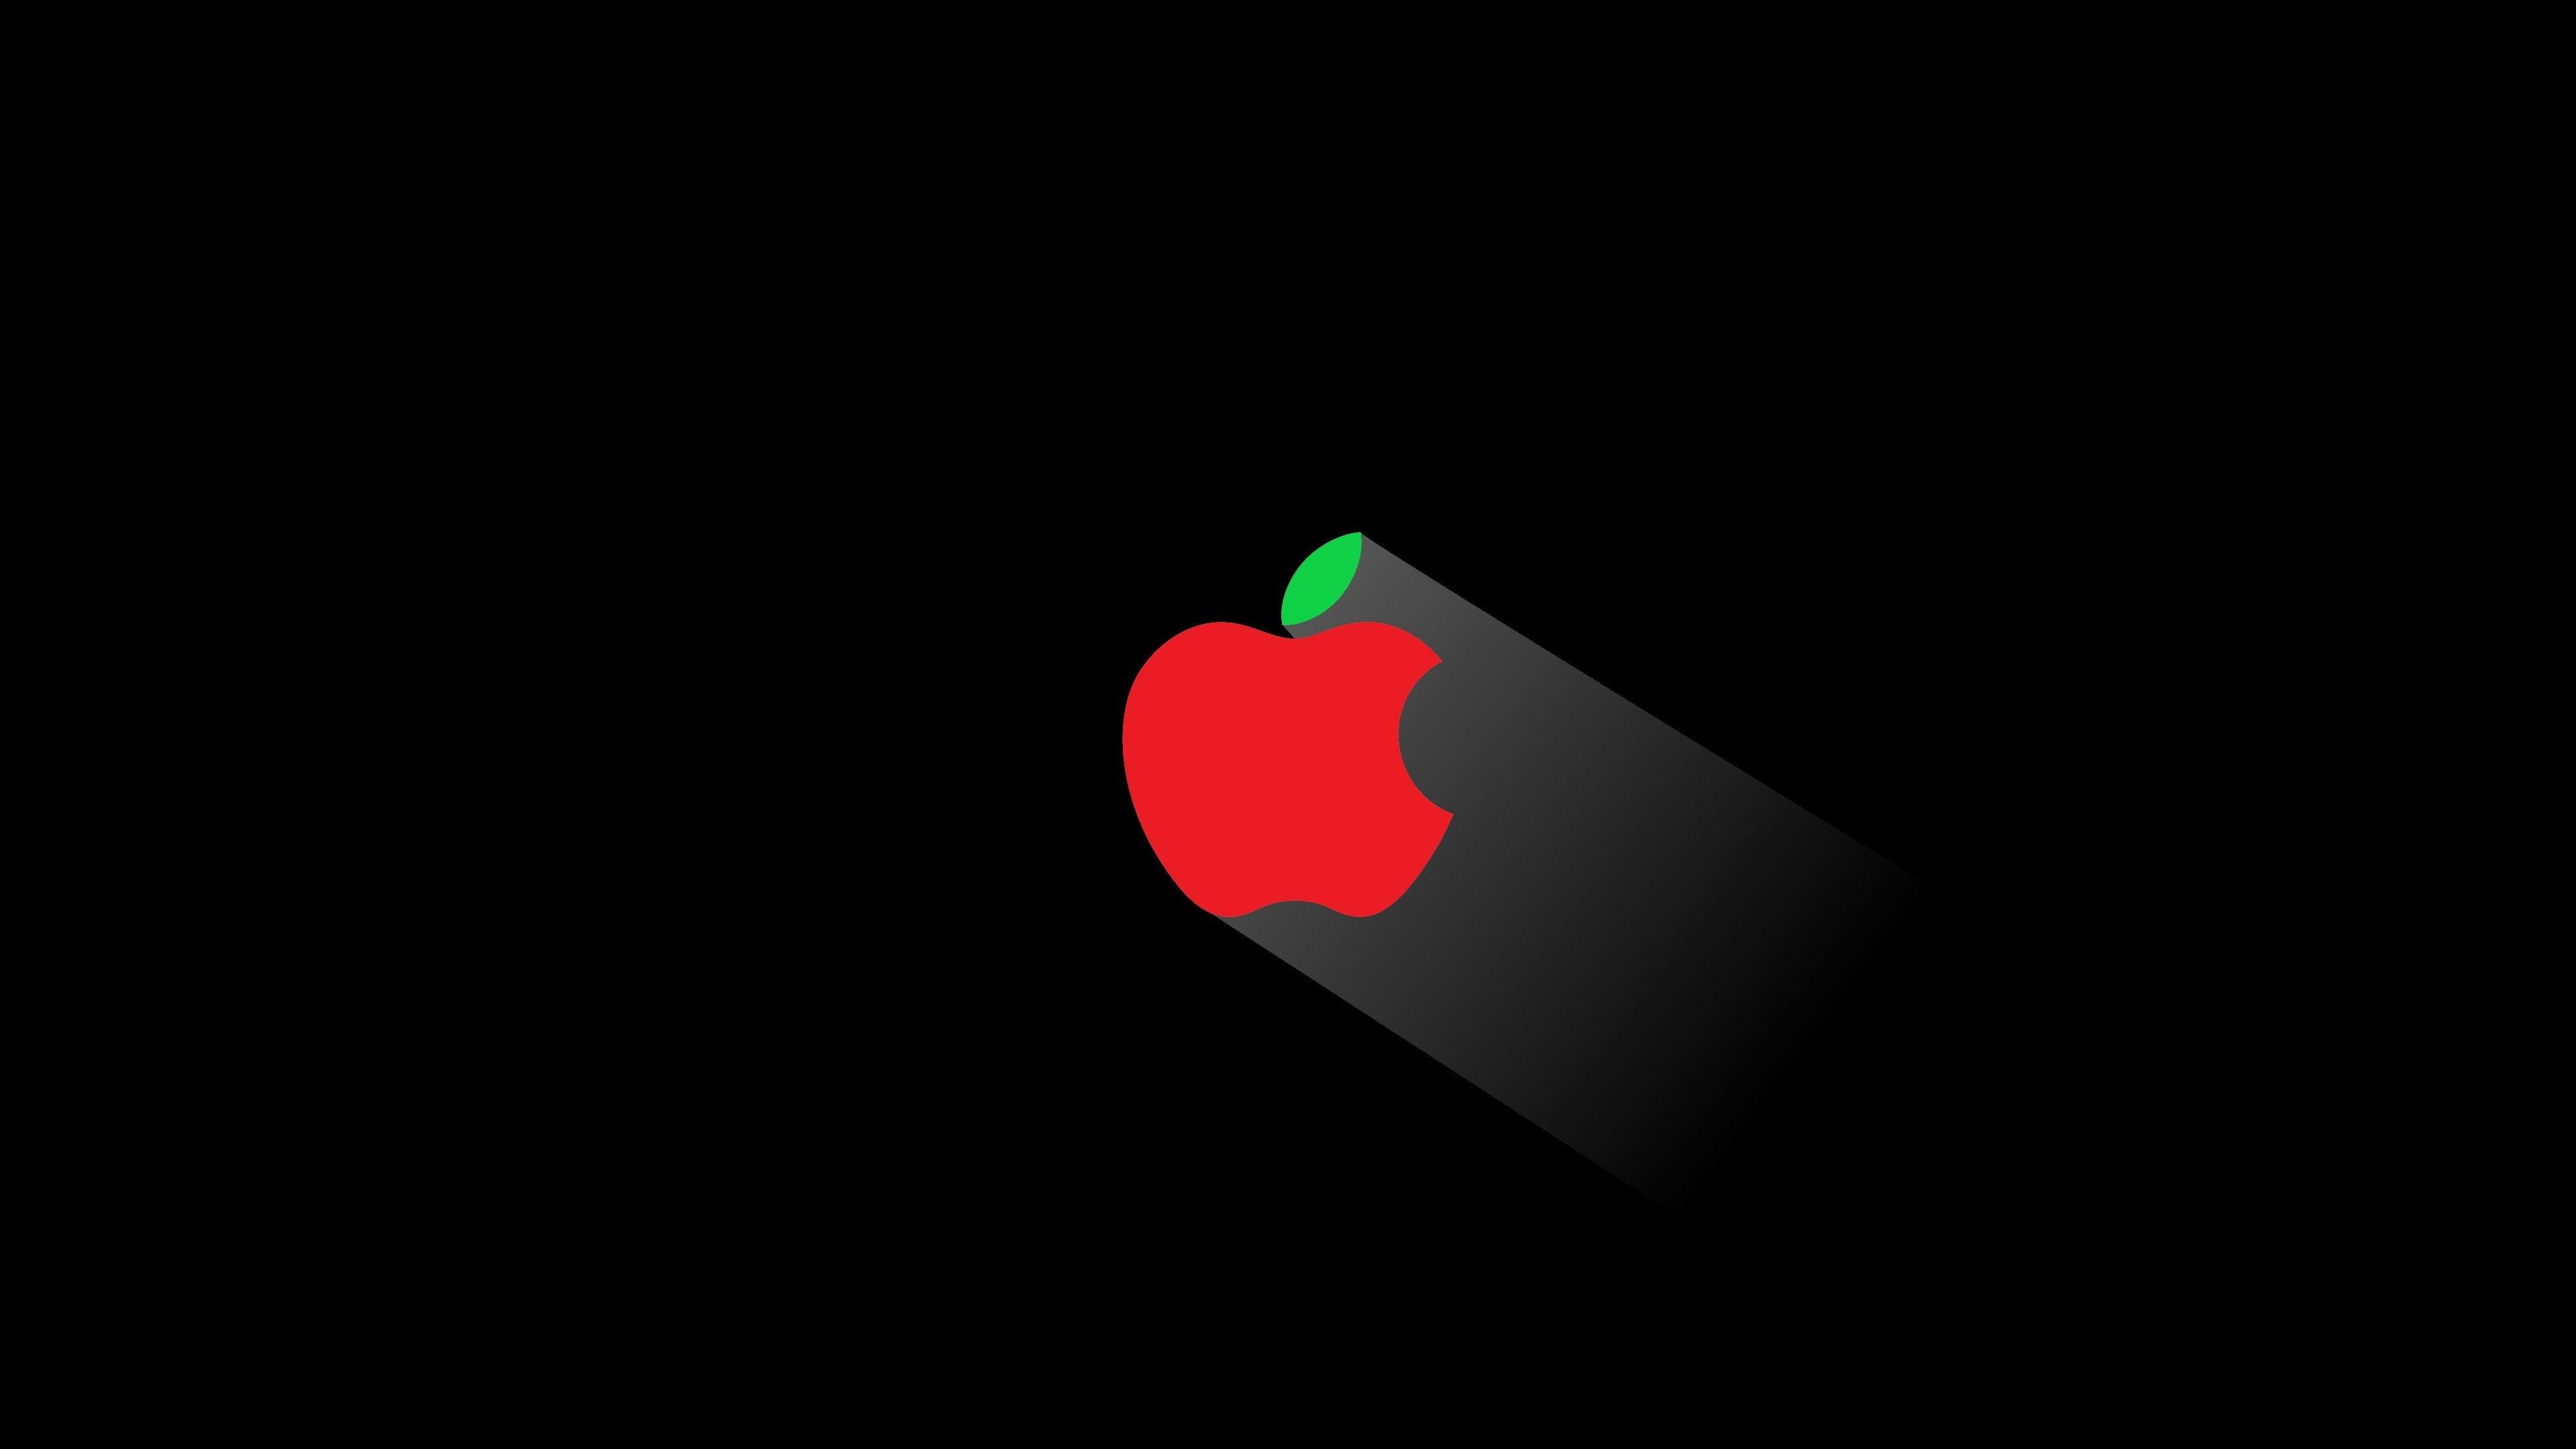 Apple Logo Wallpaper 4K For Mobile - Apple Logo Background Hd For